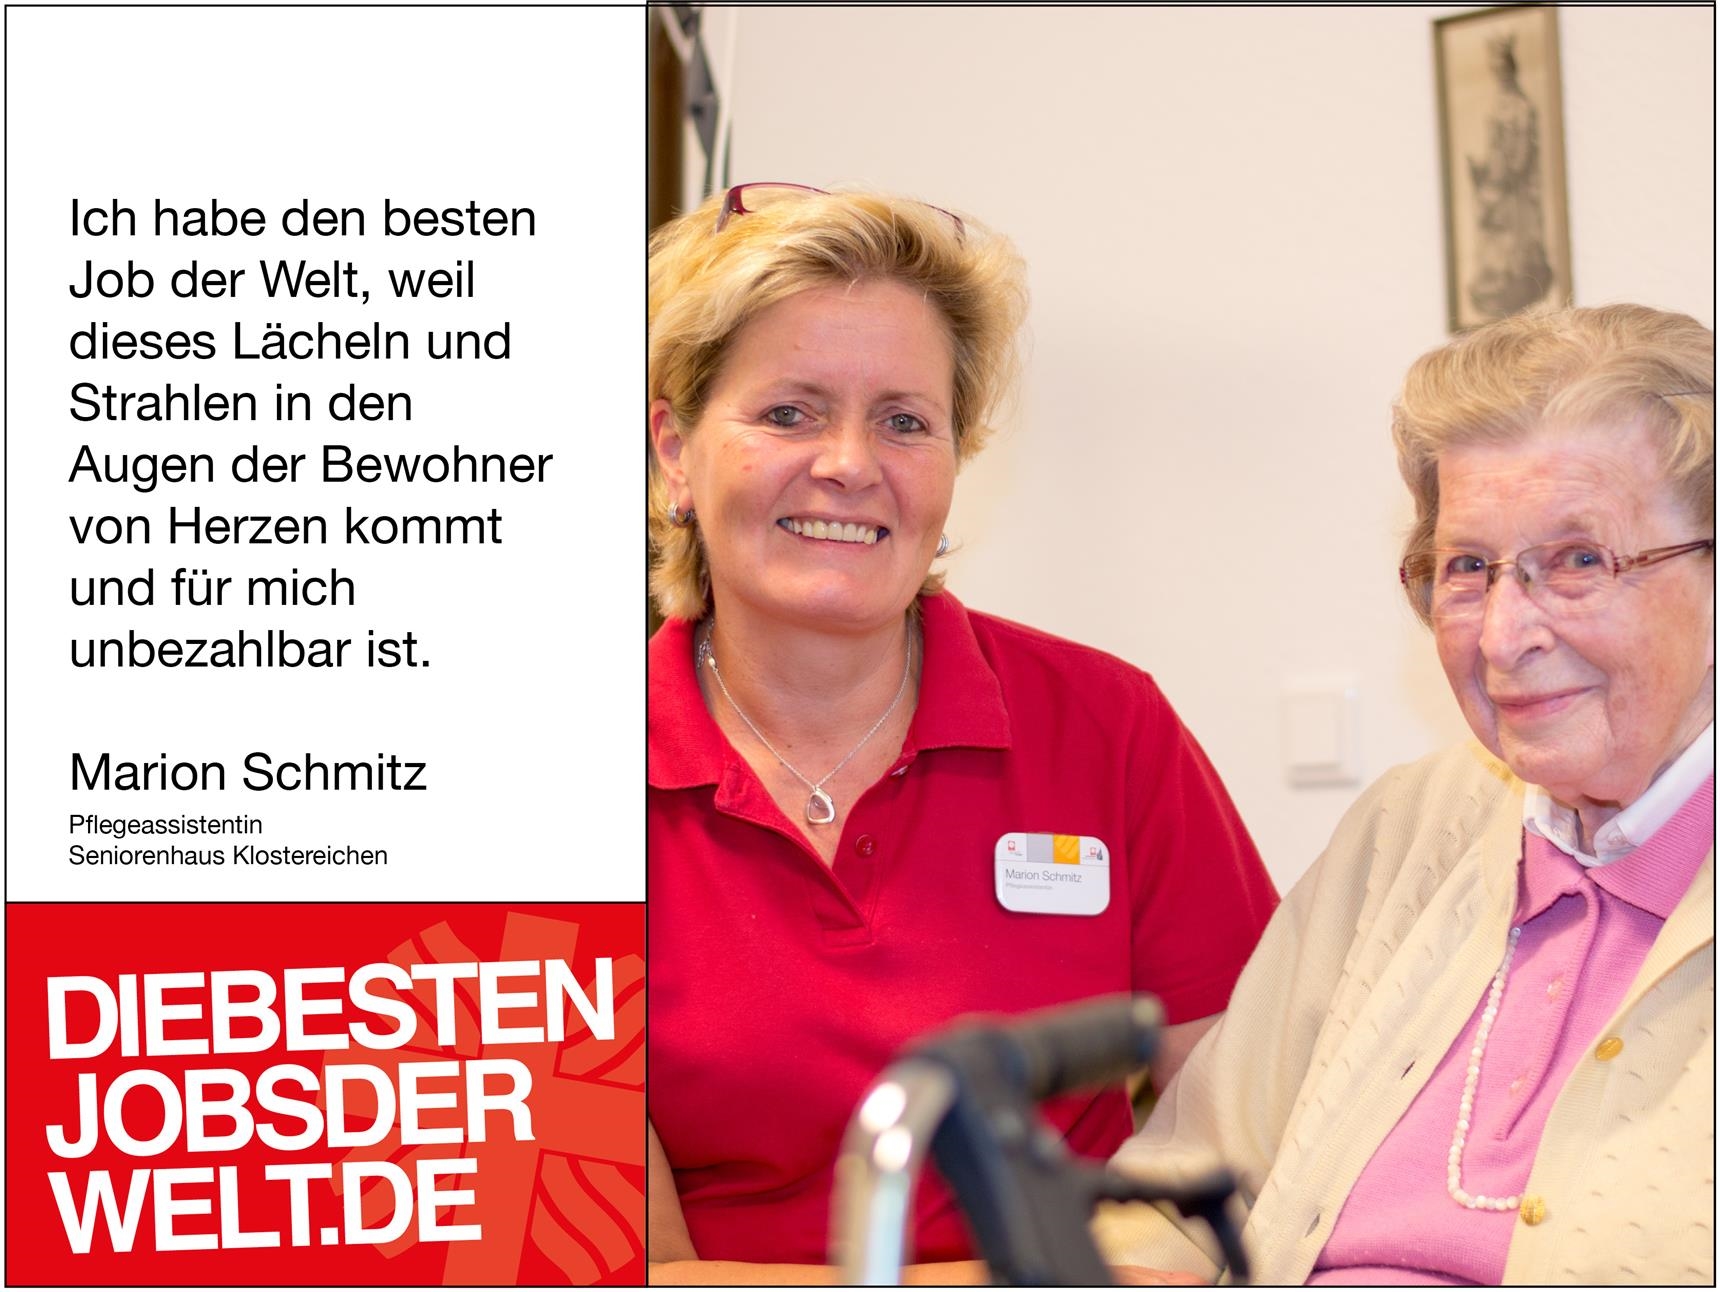 diebestenjobsderwelt - Marion Schmitz (Foto: Miriam Konietzny)